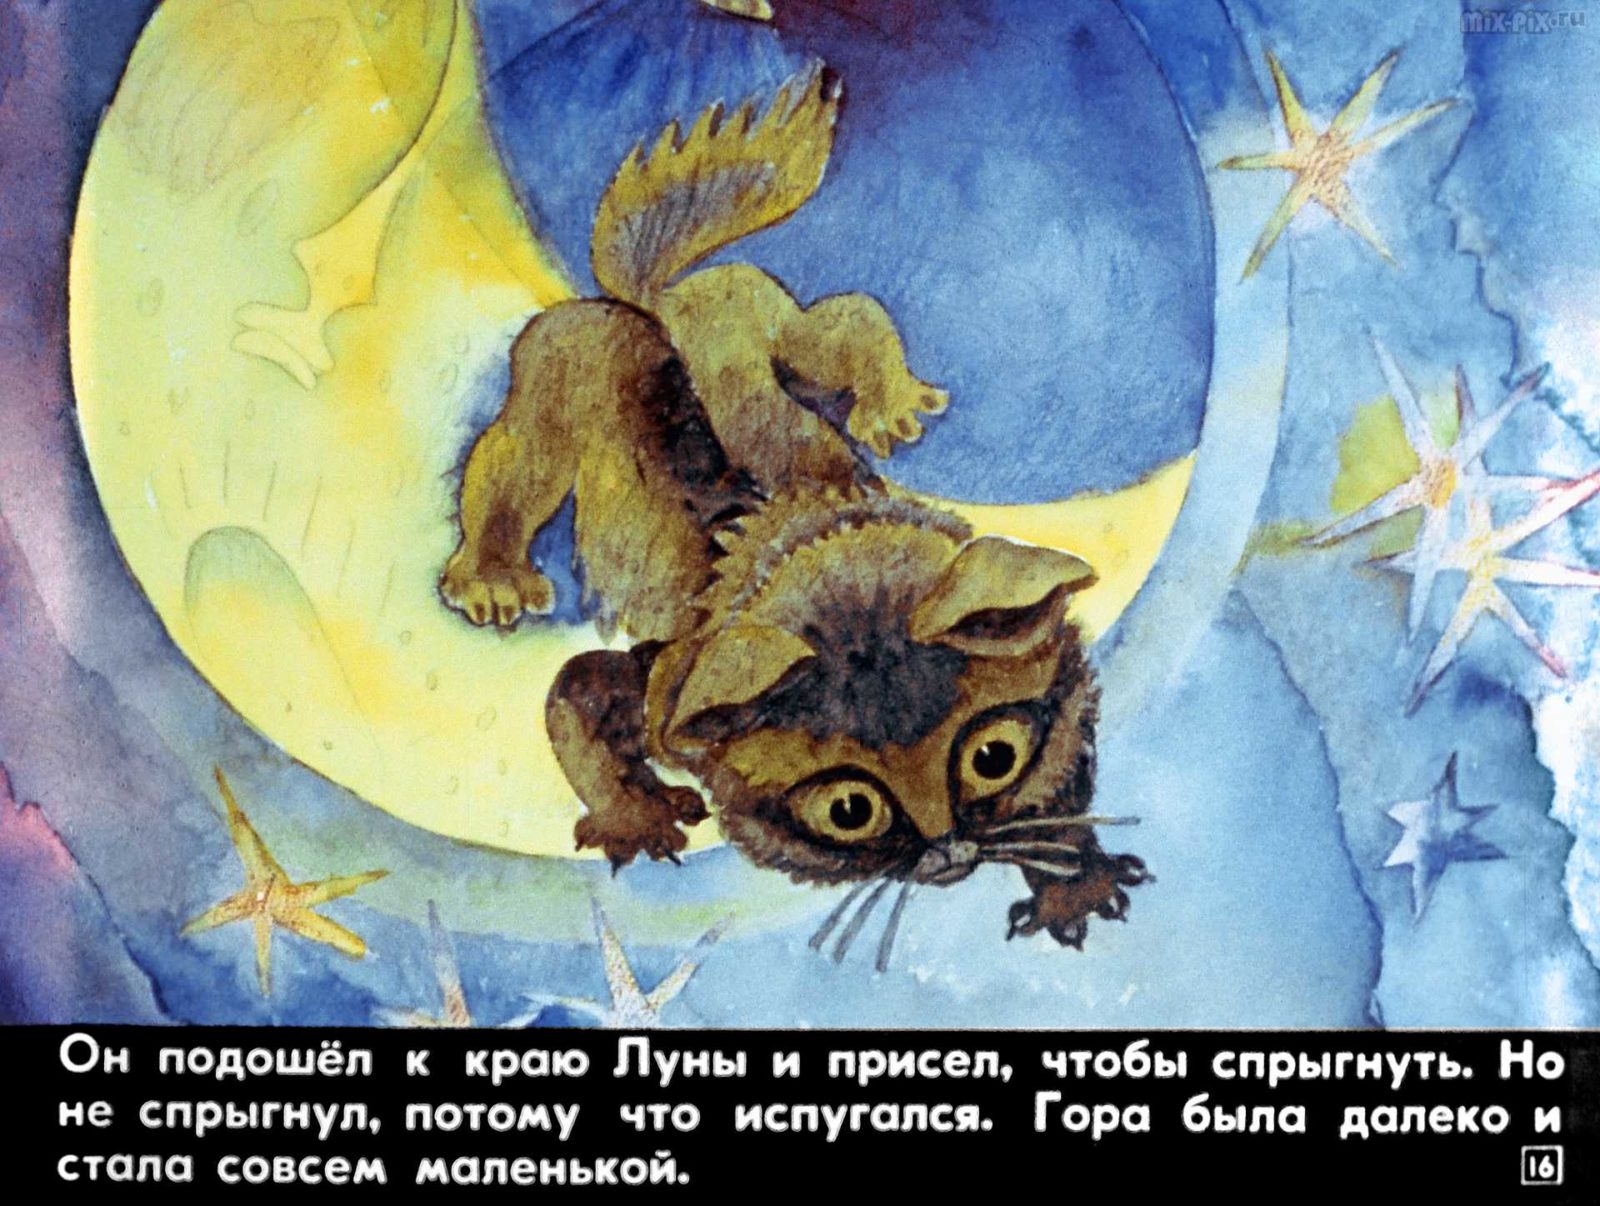 Диафильм - Сказка про лунный свет (1991)